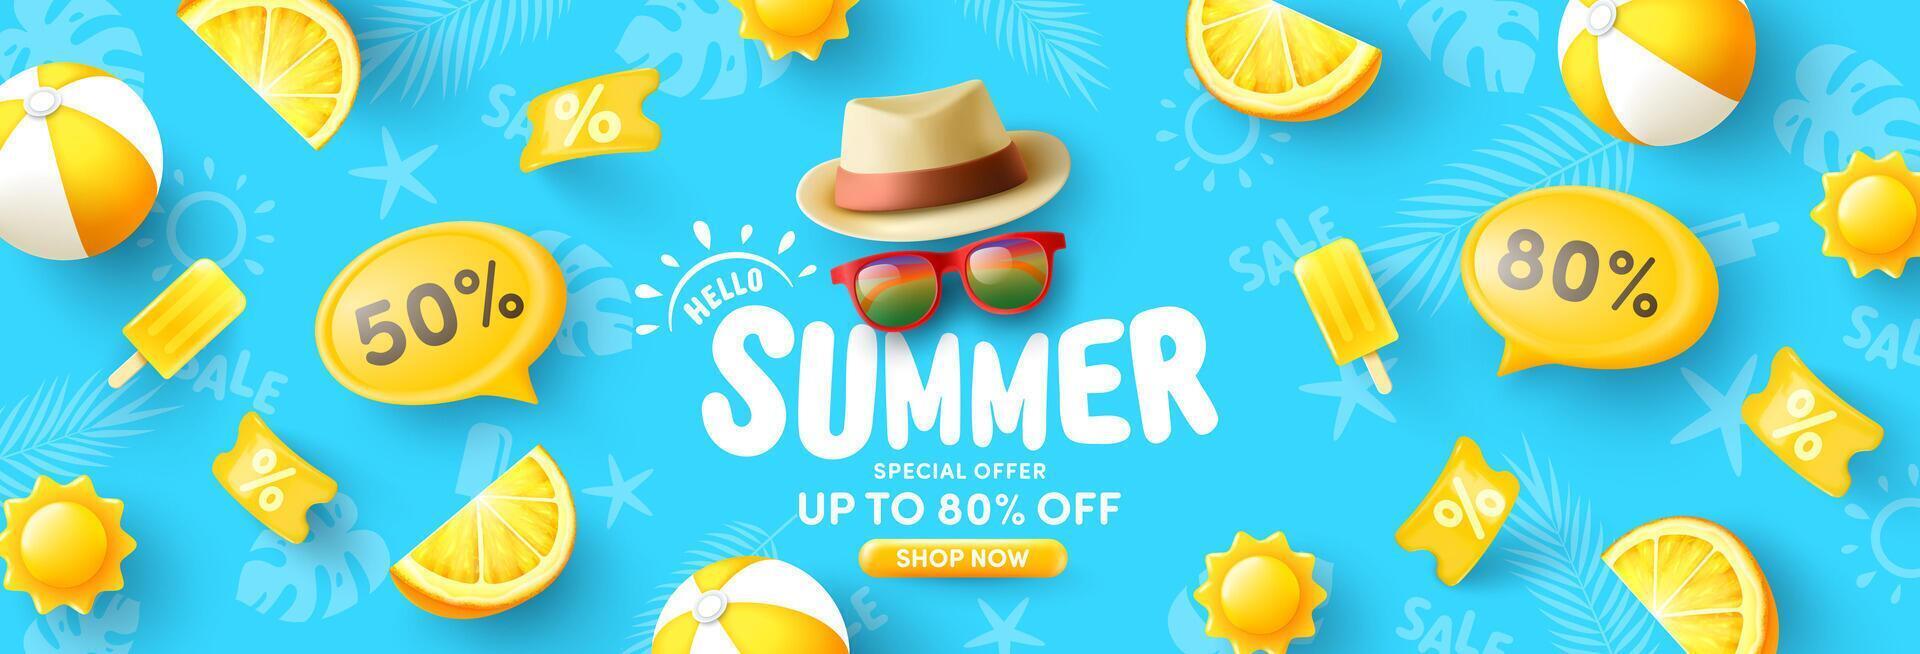 färgrik sommar försäljning baner mall med hatt, solglasögon, strand boll och strand sommar Artikel i Färg gul på blå bakgrundskampanj och handla mall för sommar säsong. vektor